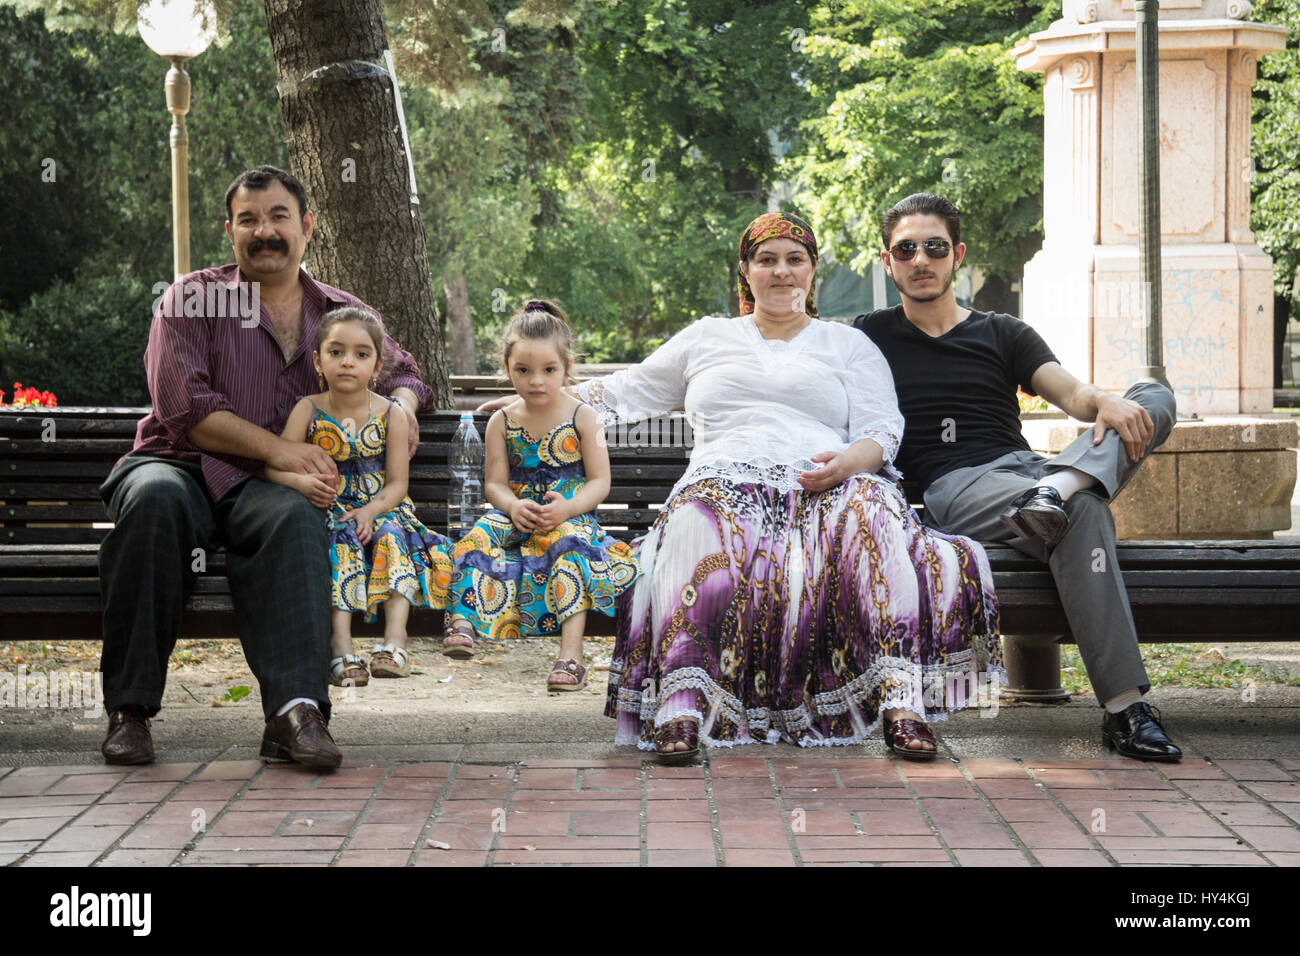 Pancevo, Serbie - juin 13, 2015 : portrait d'une famille rom portant des costumes traditionnels photo d'une famille rom posant pour le photographe alors que nous Banque D'Images